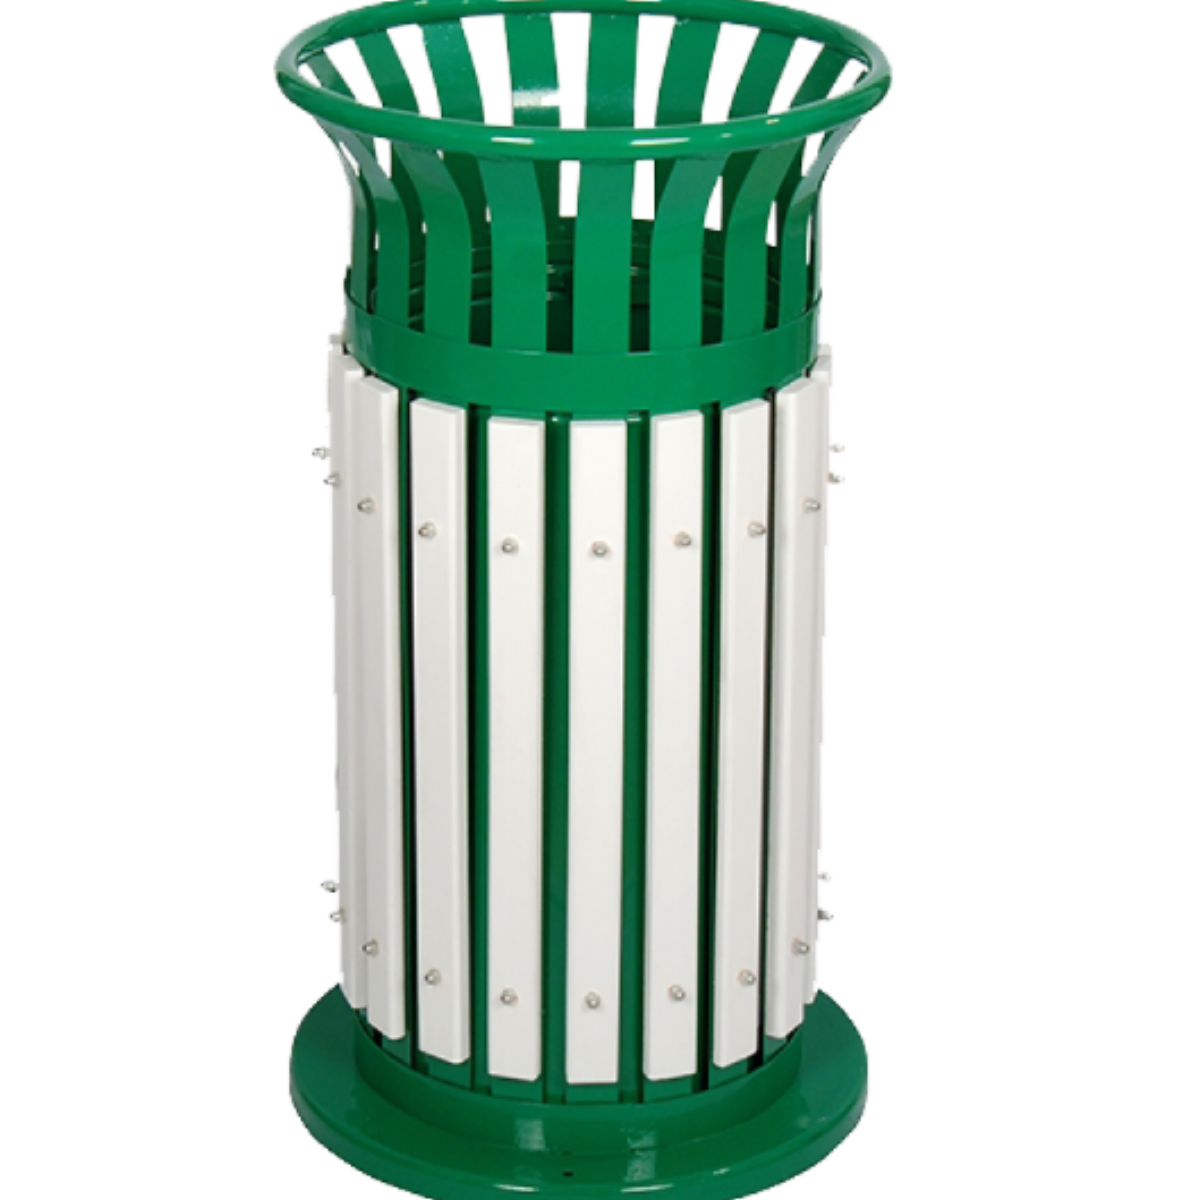 AB-501 Wood Open Space Trash Can adlı ürünün logosu